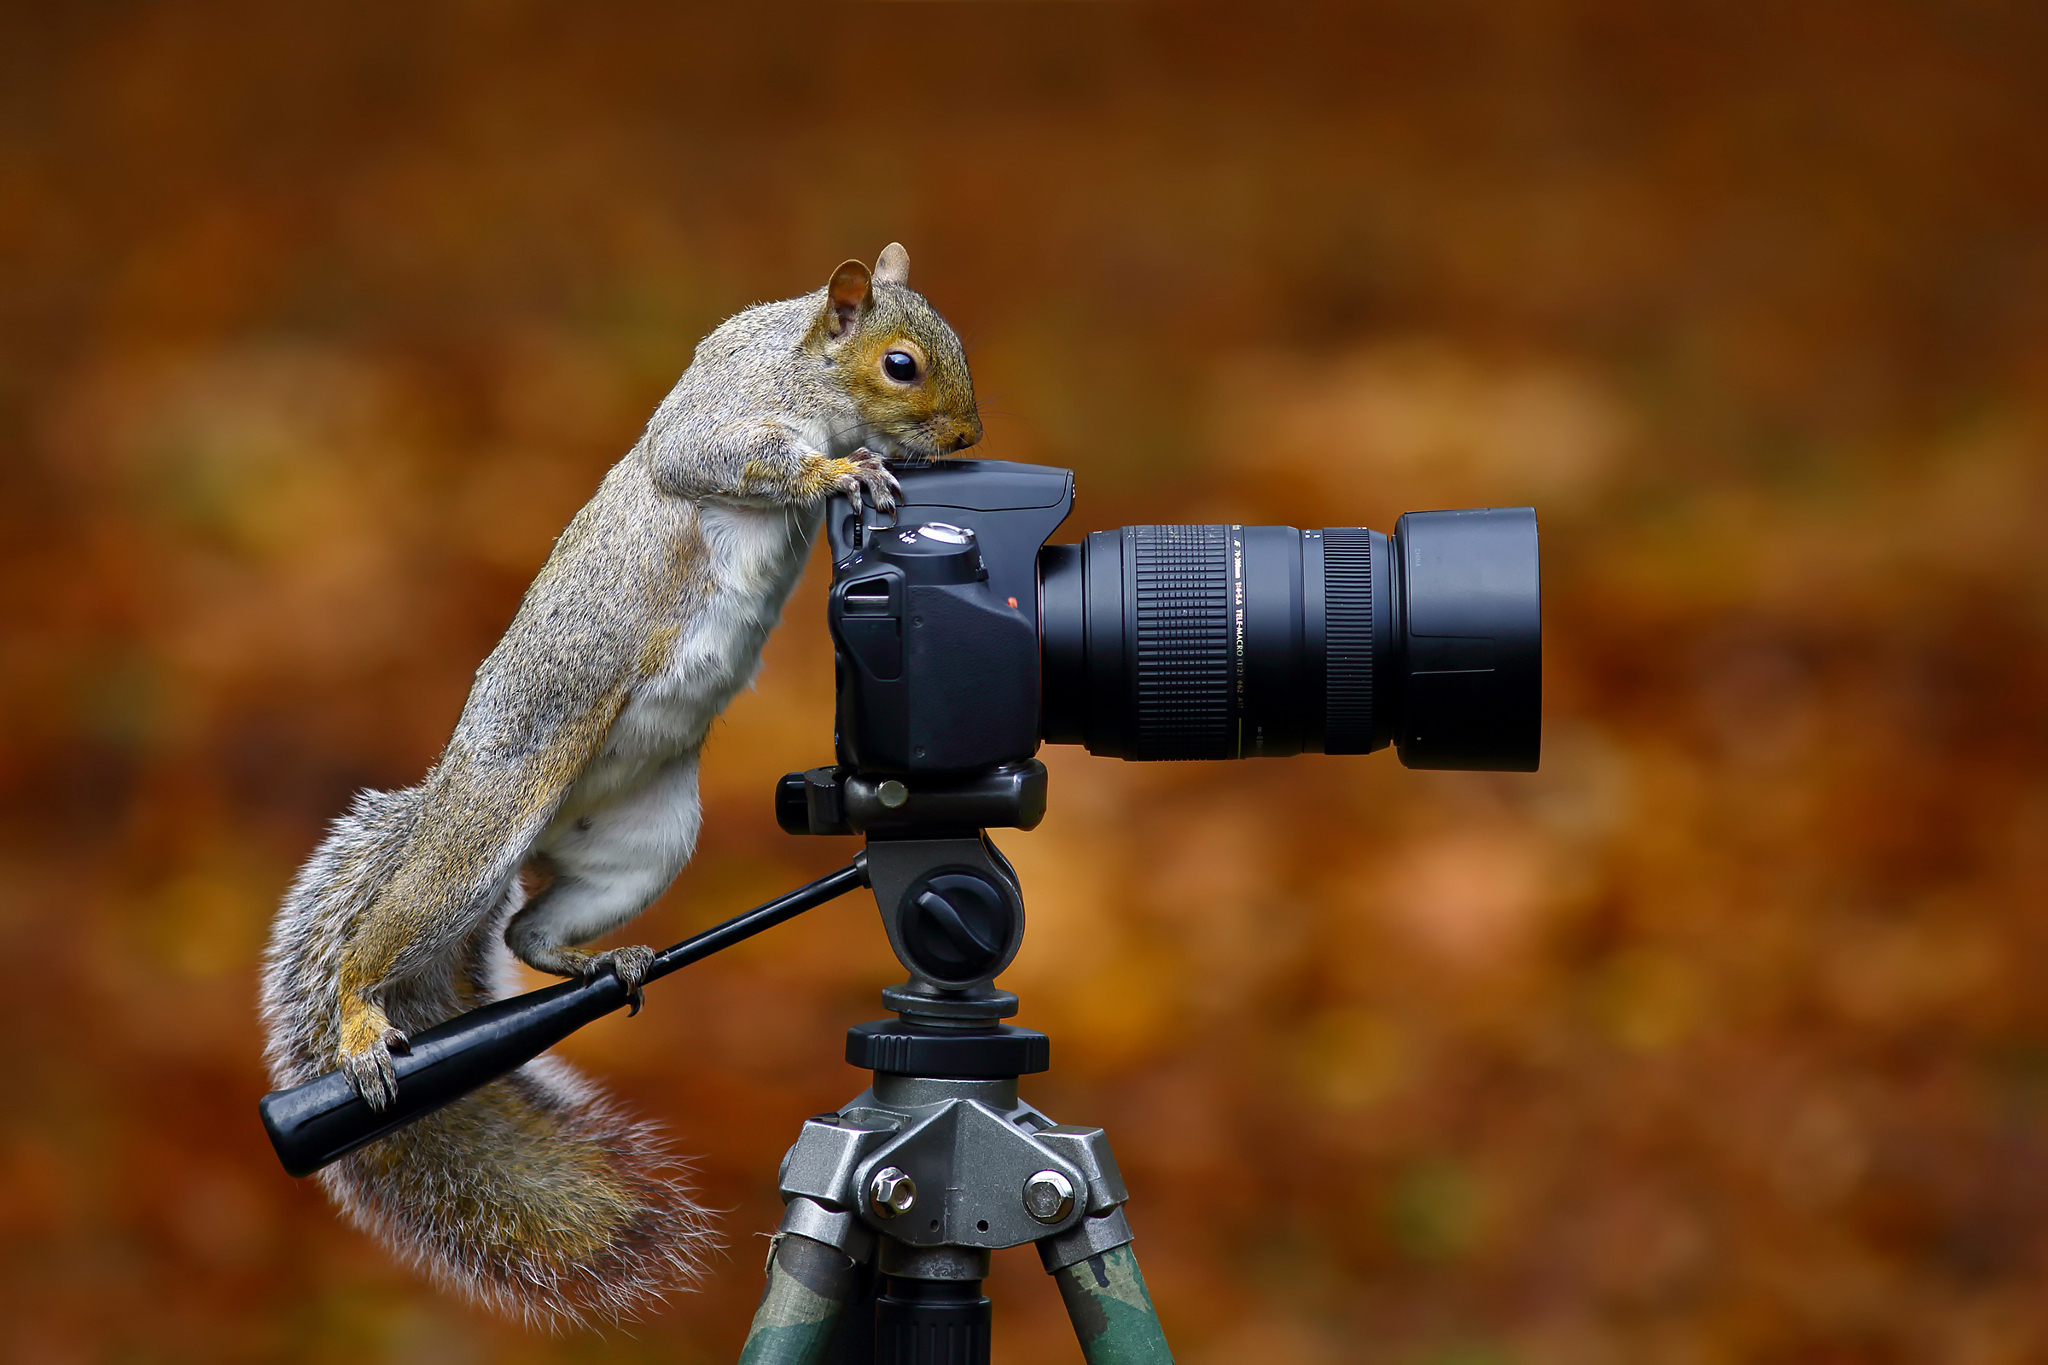 Foto Rolig Ekorrar Kamera Wild Grey Squirrel Fotograf roliga ekorre